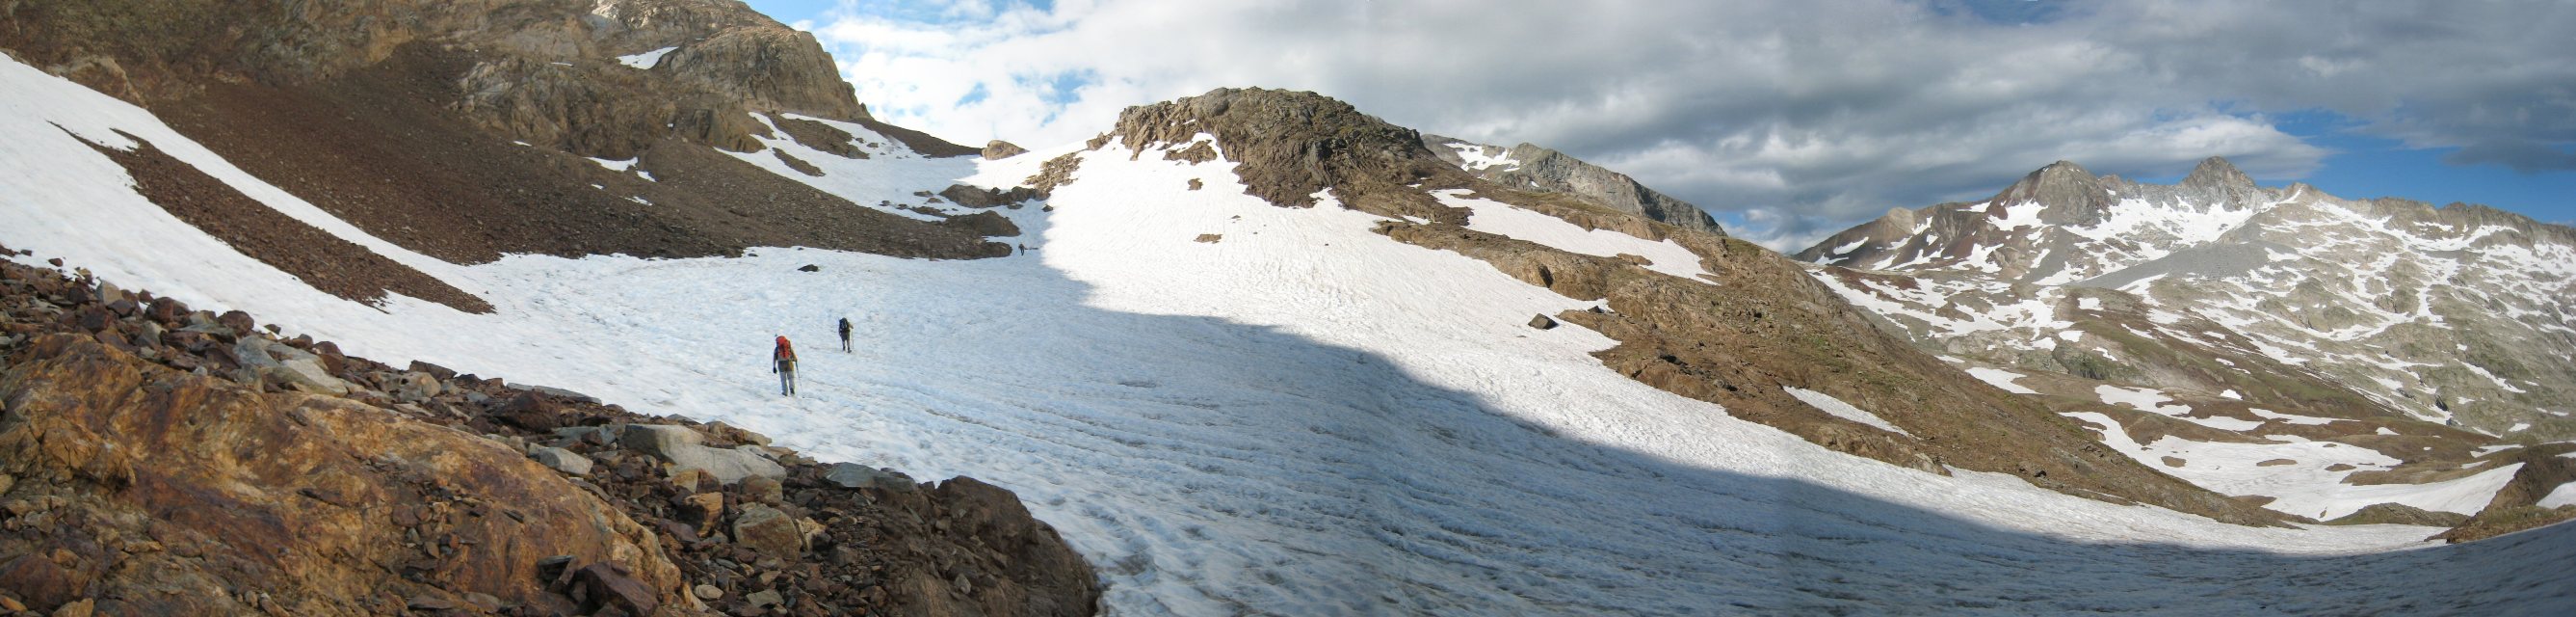 Ascenso al Estaragne (3006 m)